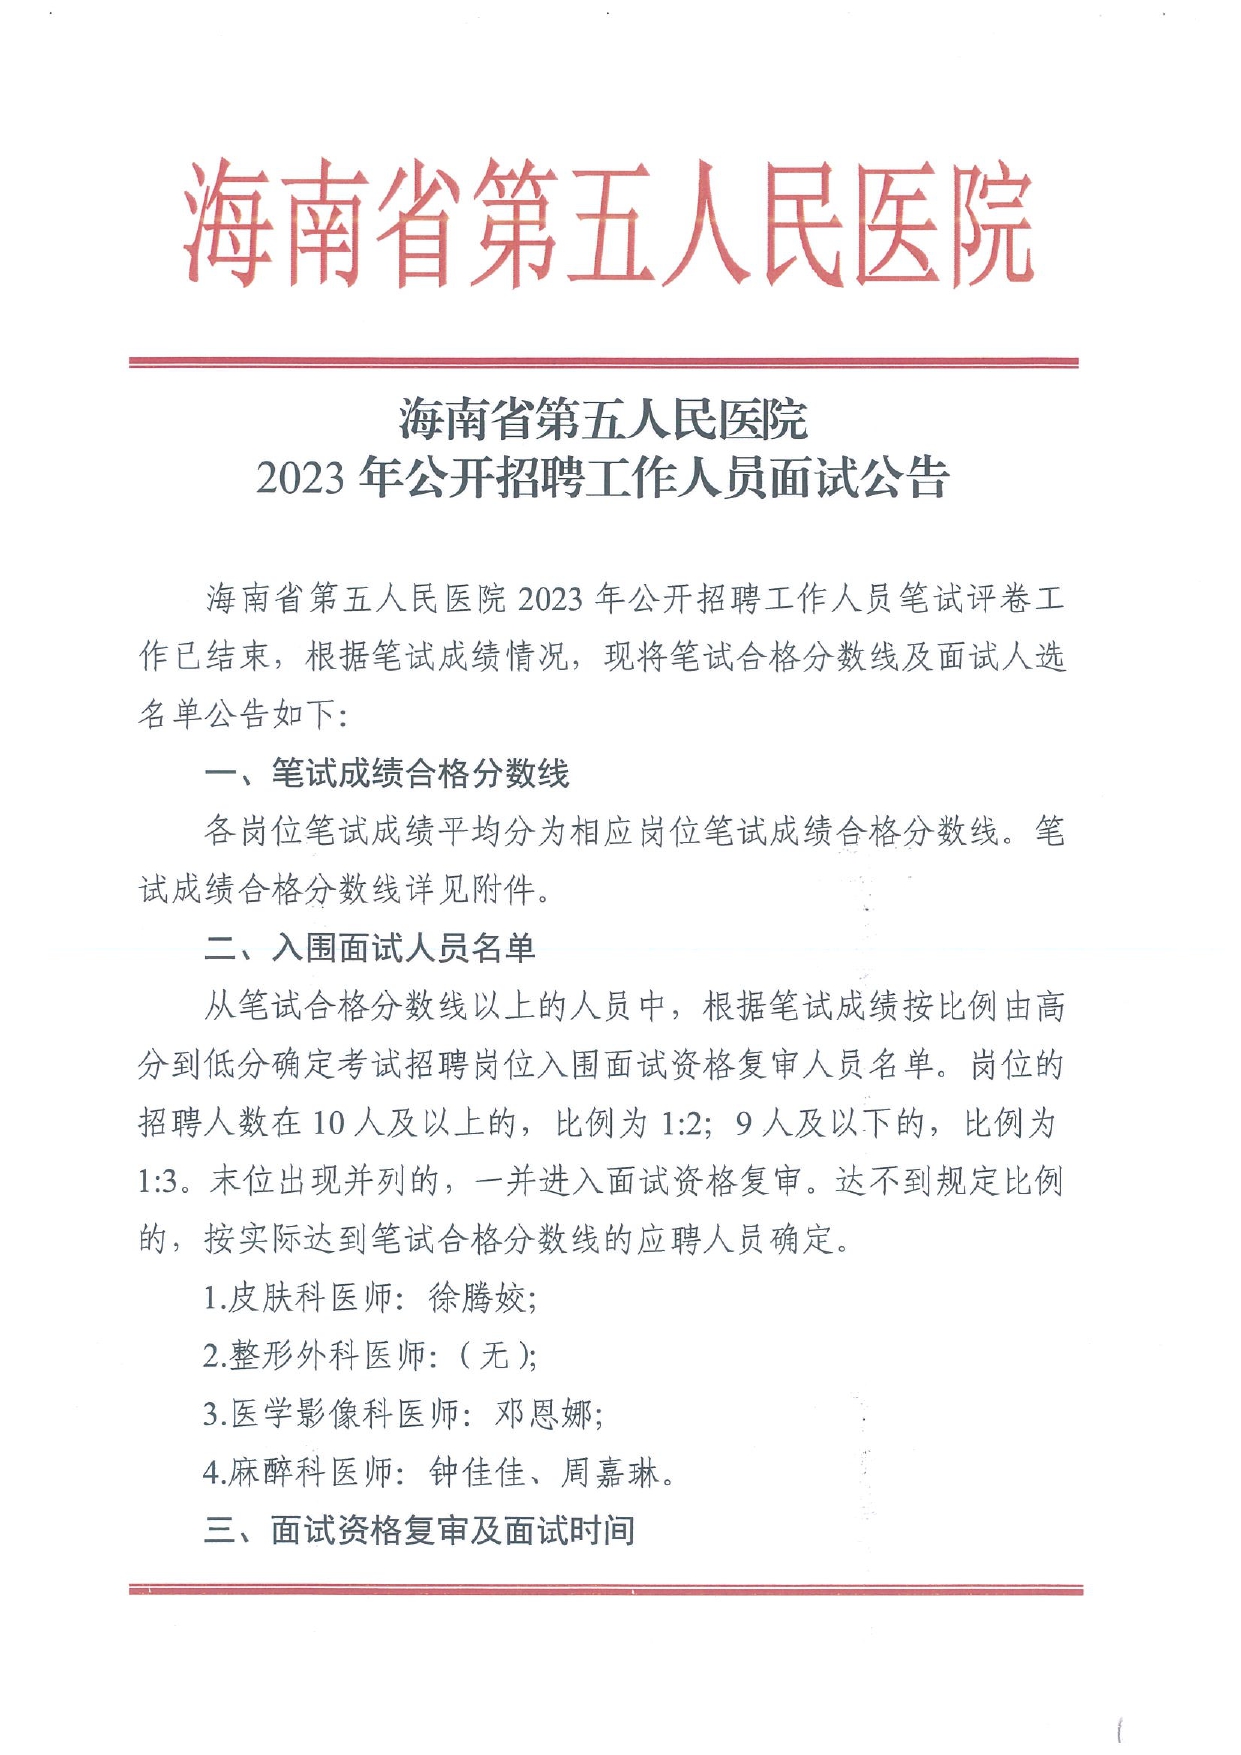 海南省第五人民医院2023年公开招聘工作人员面试公告_page-0001.jpg